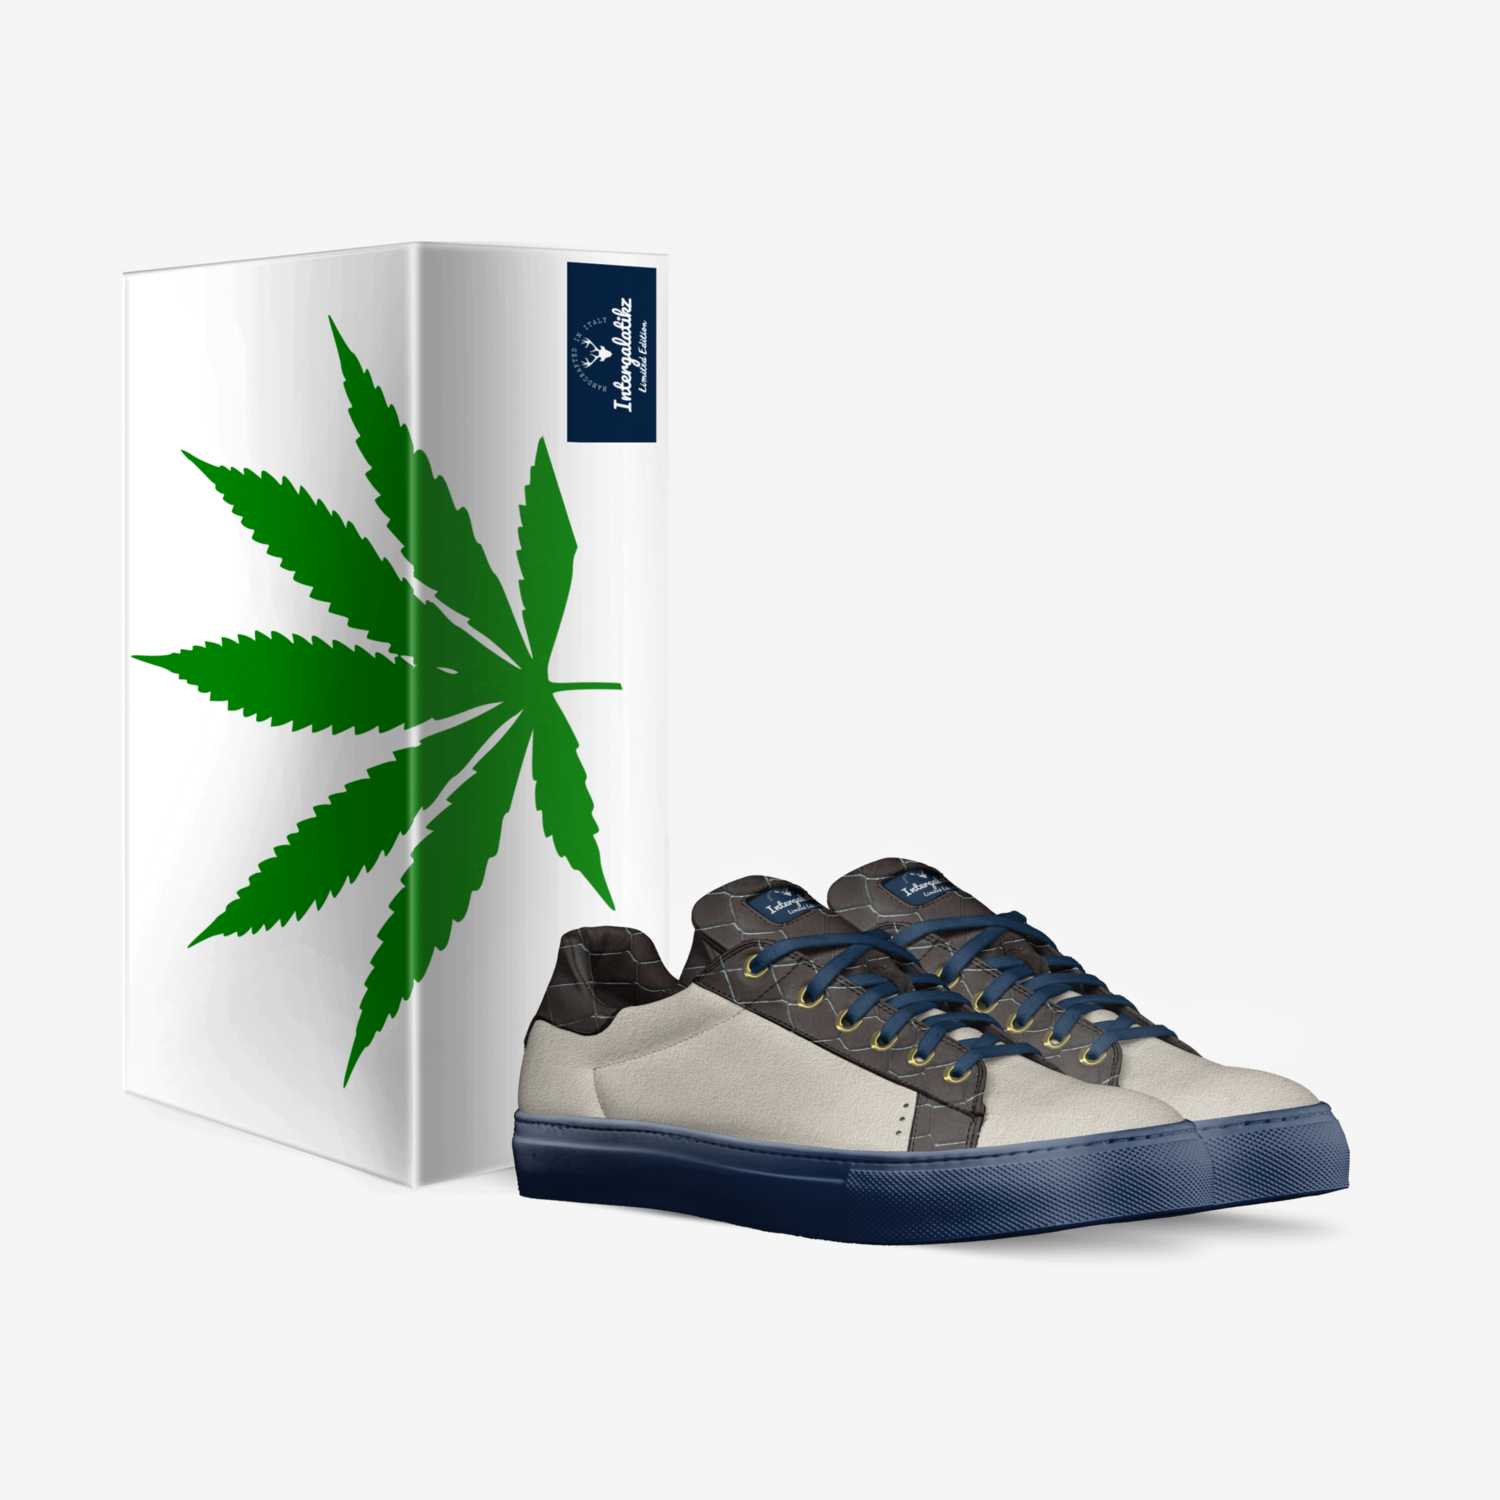 kinshi blu custom made in Italy shoes by Galatikz Dixon | Box view